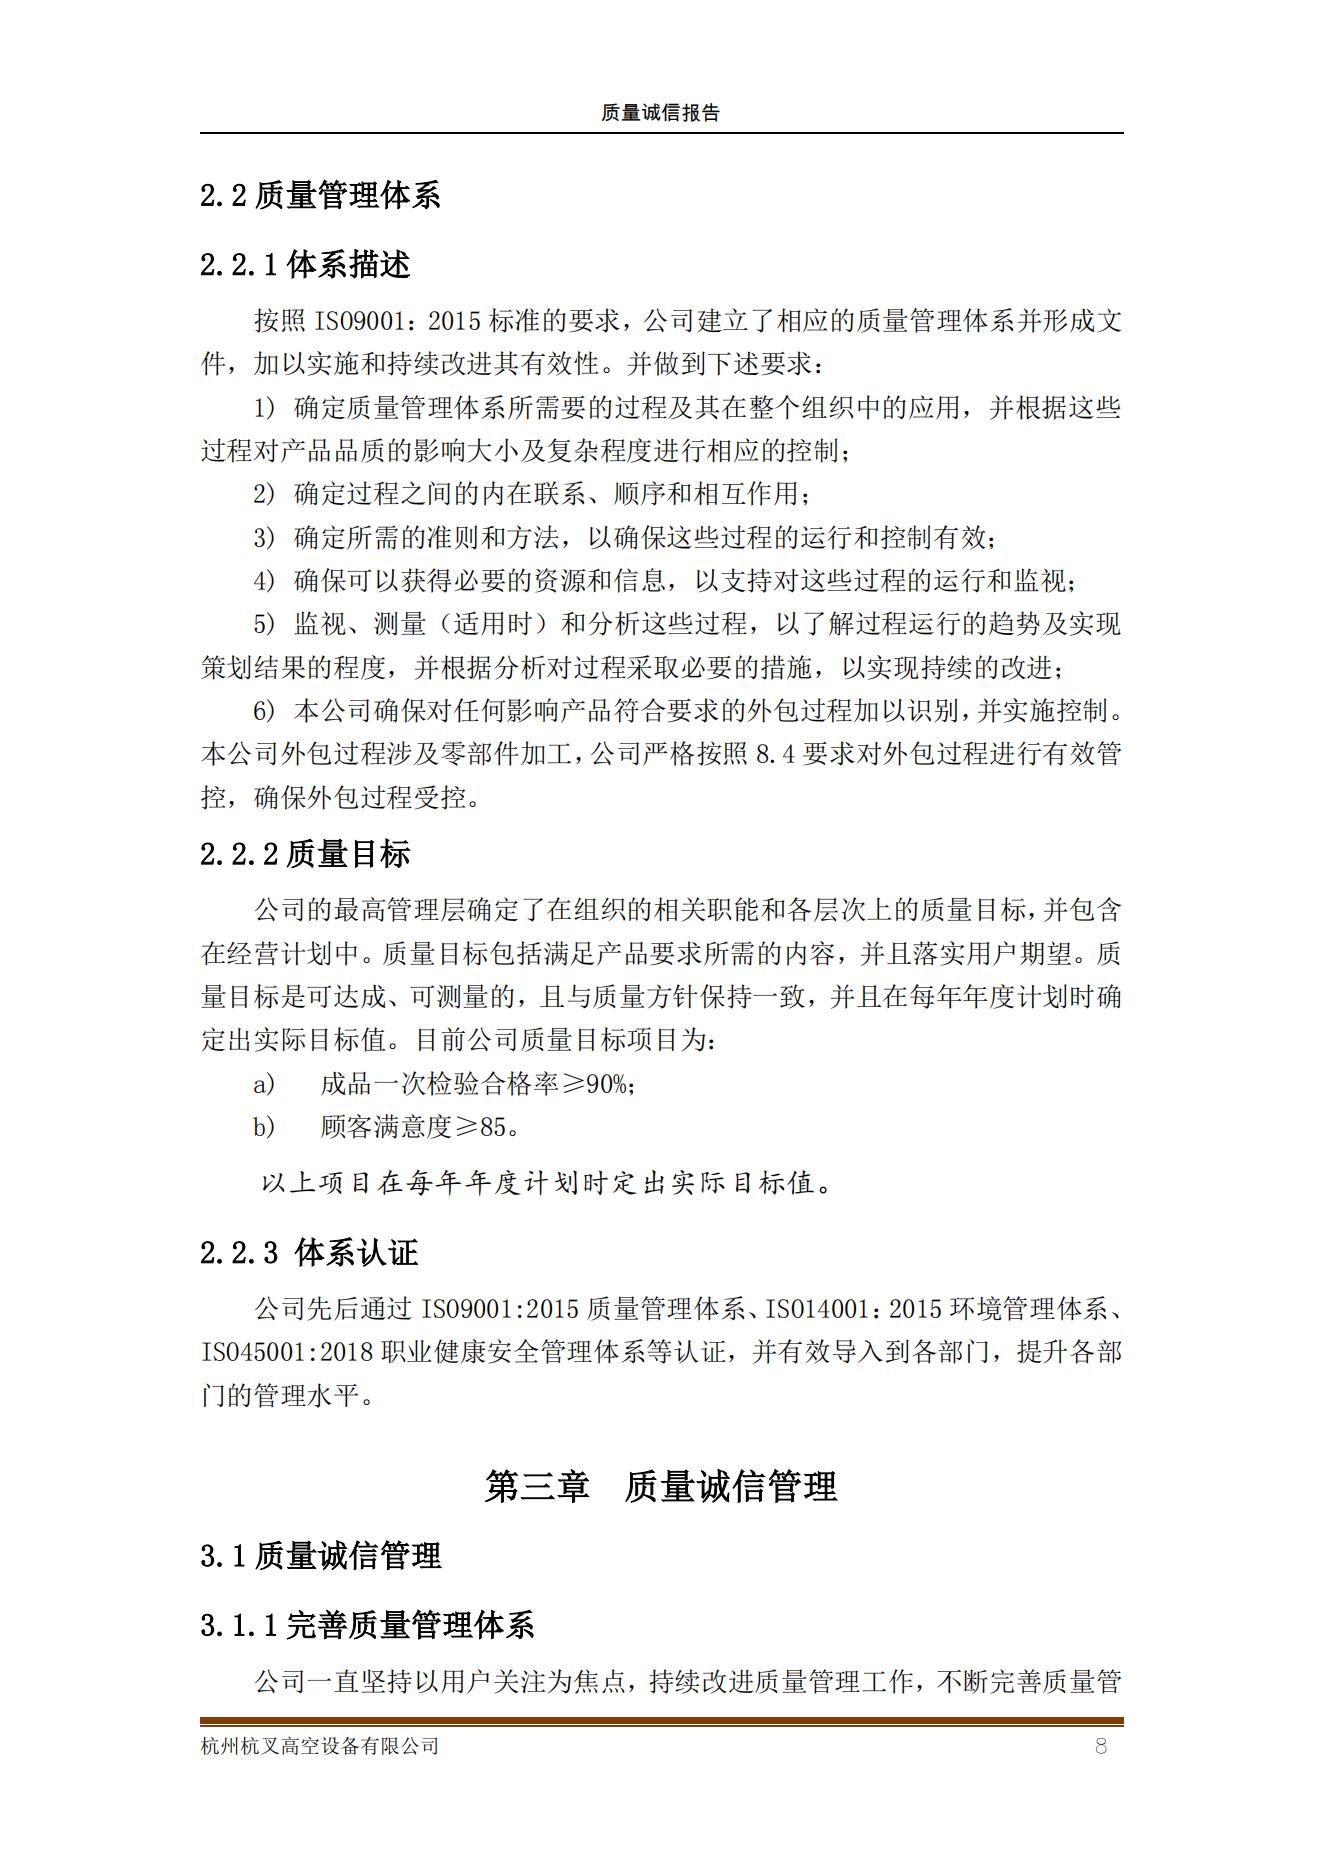 杭州杭叉高空設備公司2021年質量誠信報告(圖8)